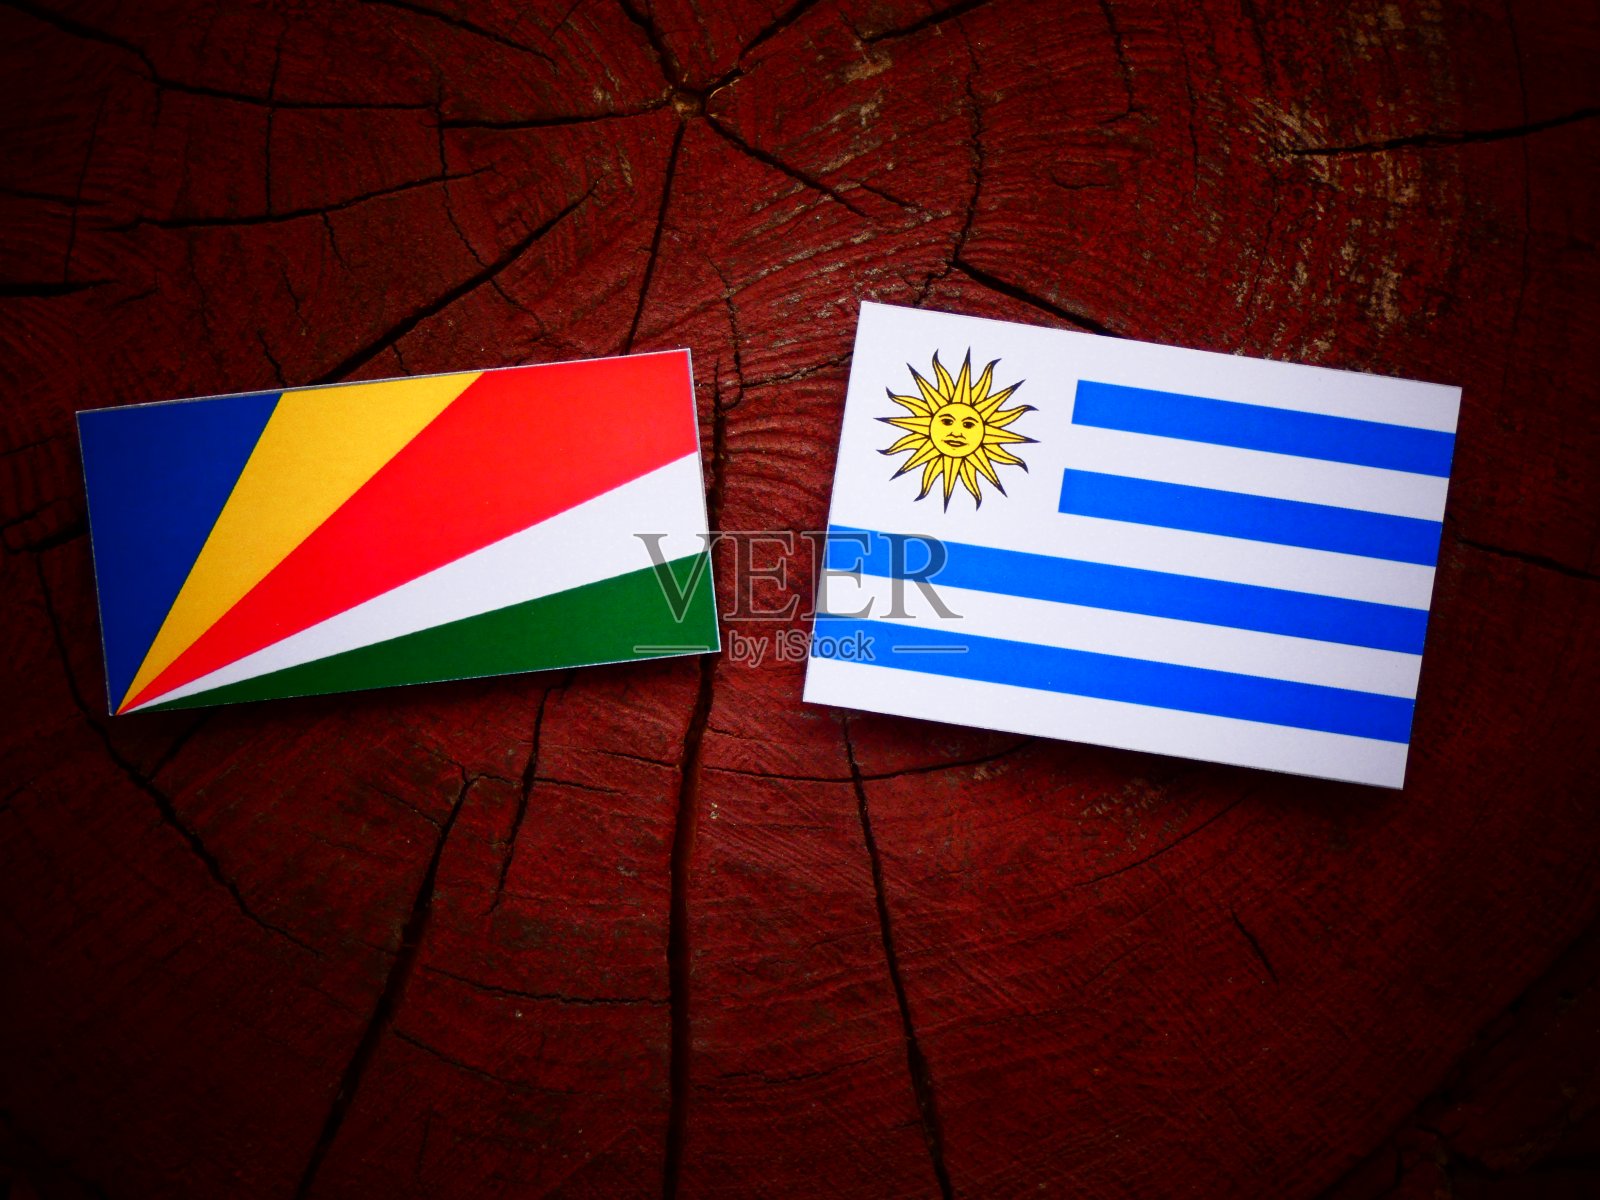 塞舌尔国旗和乌拉圭国旗插在孤立的树桩上照片摄影图片